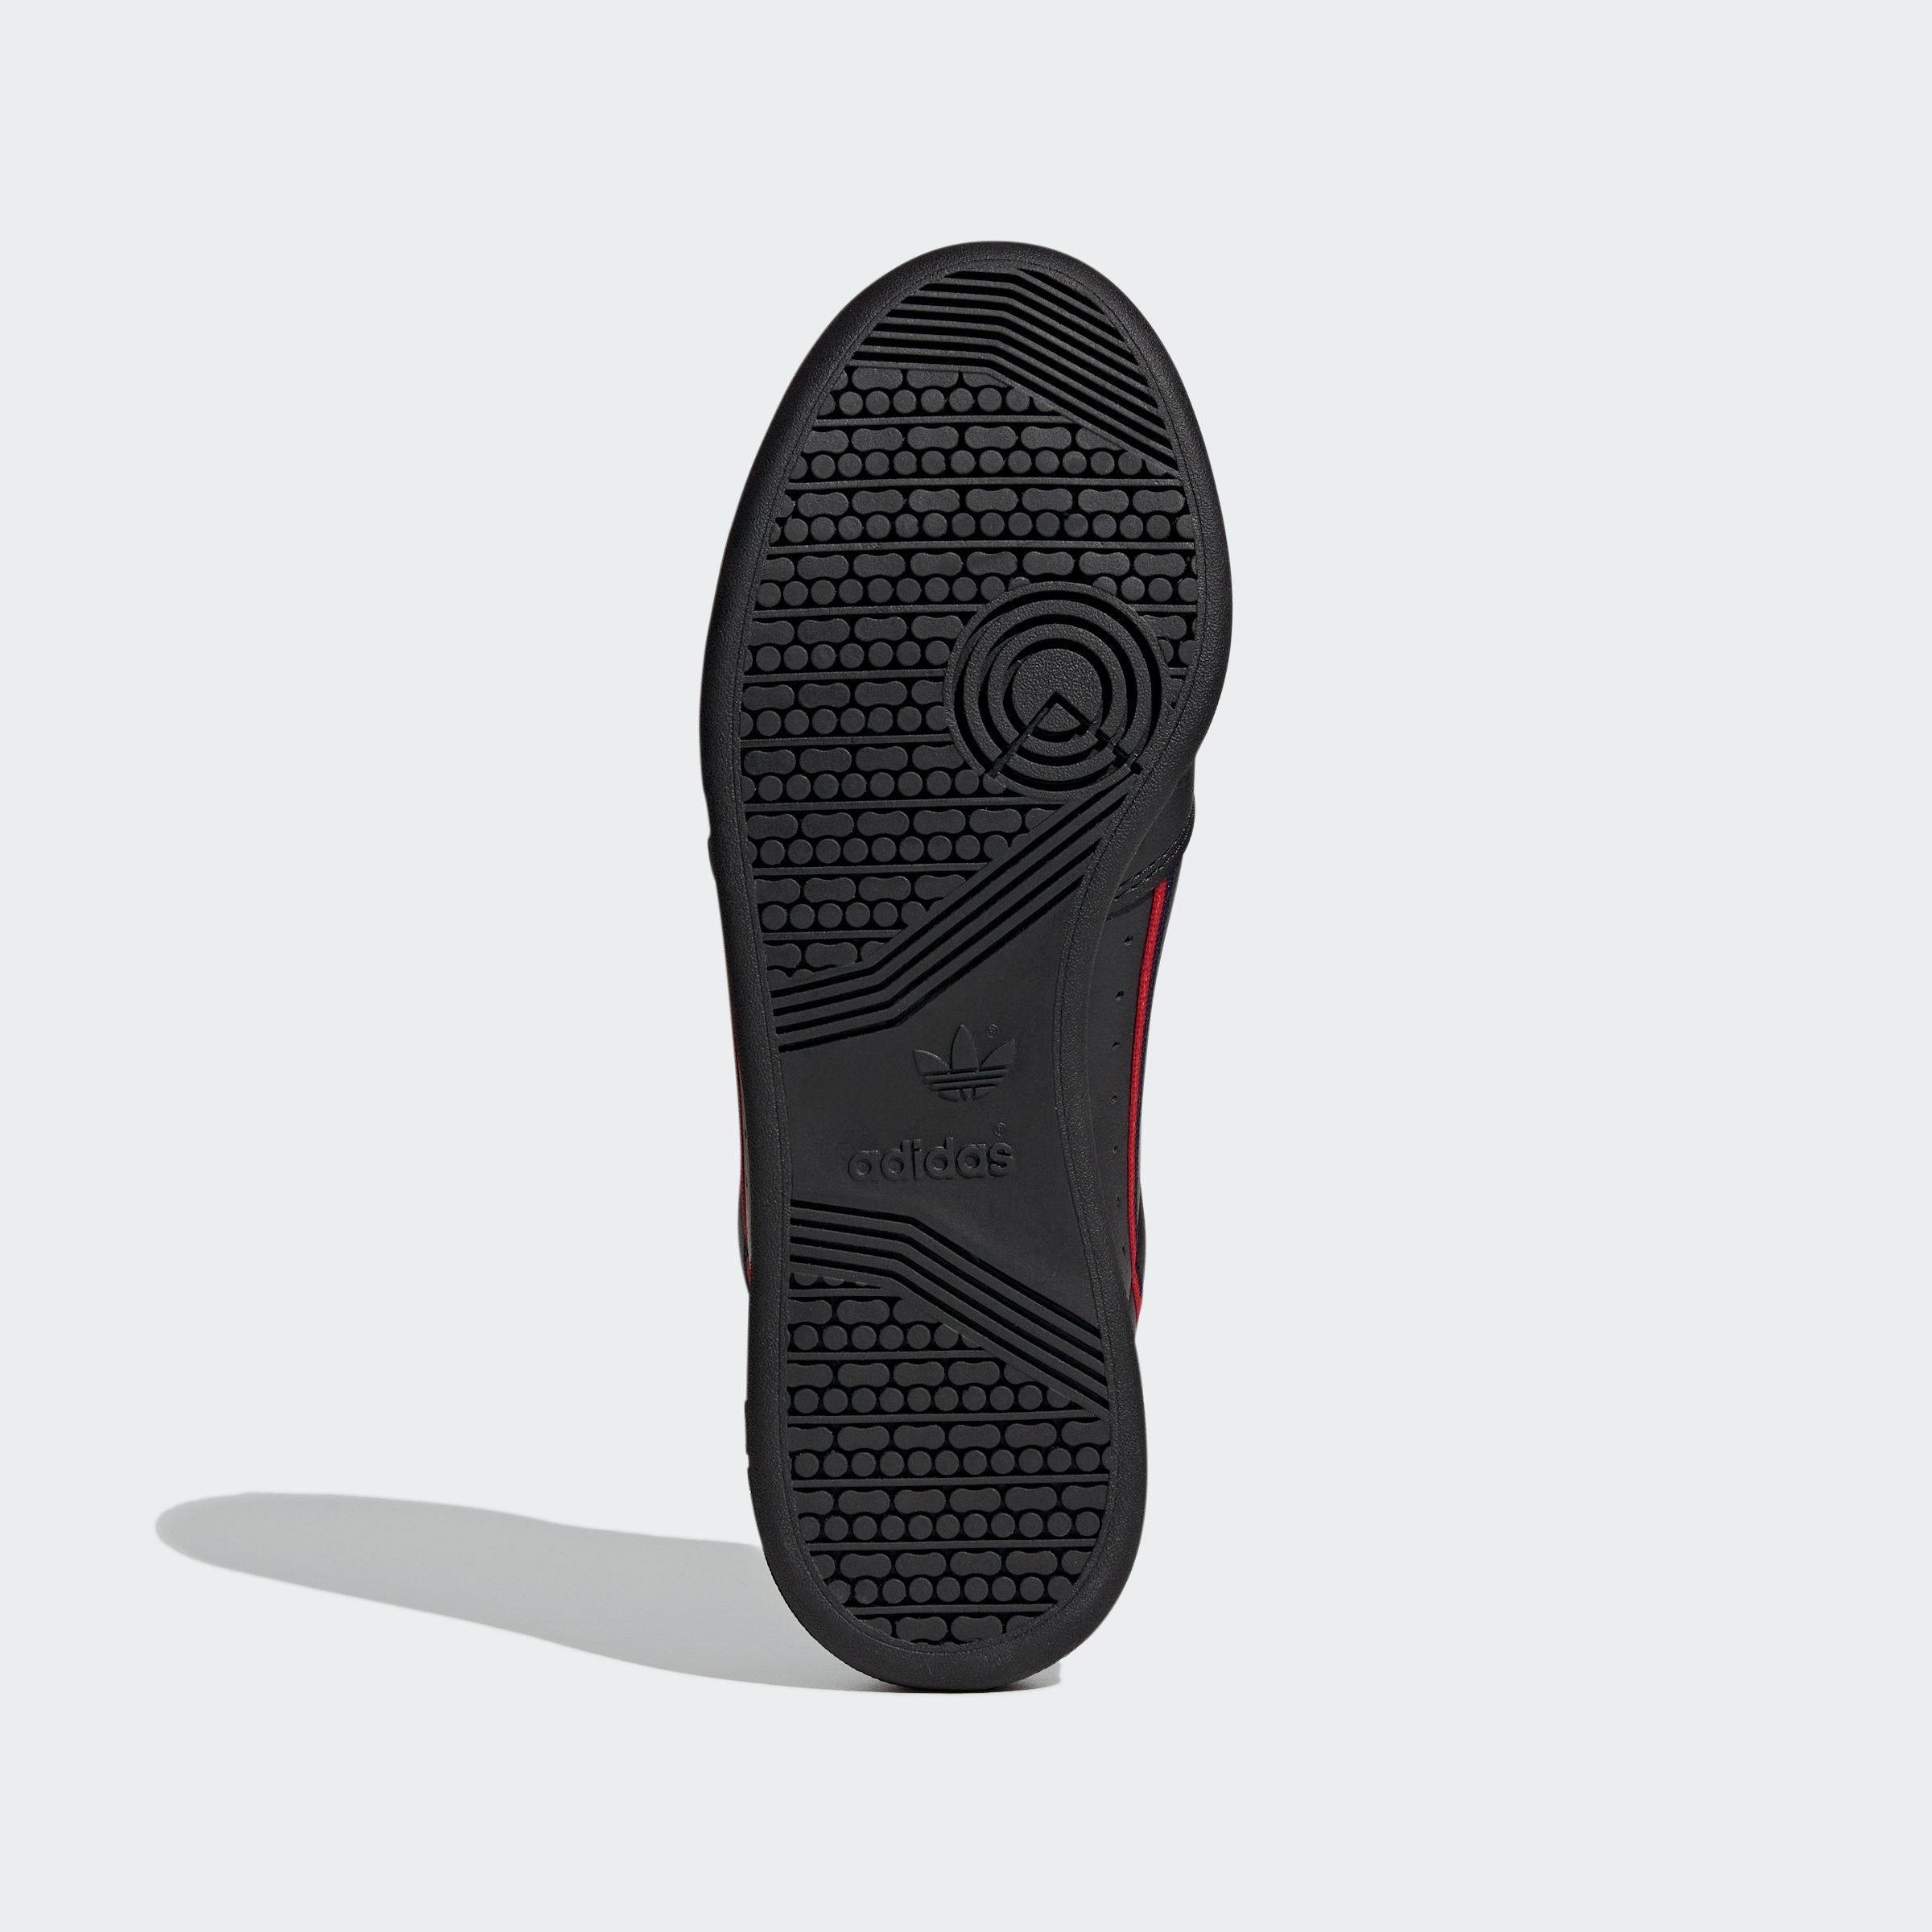 CBLACK-CONAVY-SCARLE CONTINENTAL Sneaker 80 VEGAN adidas Originals